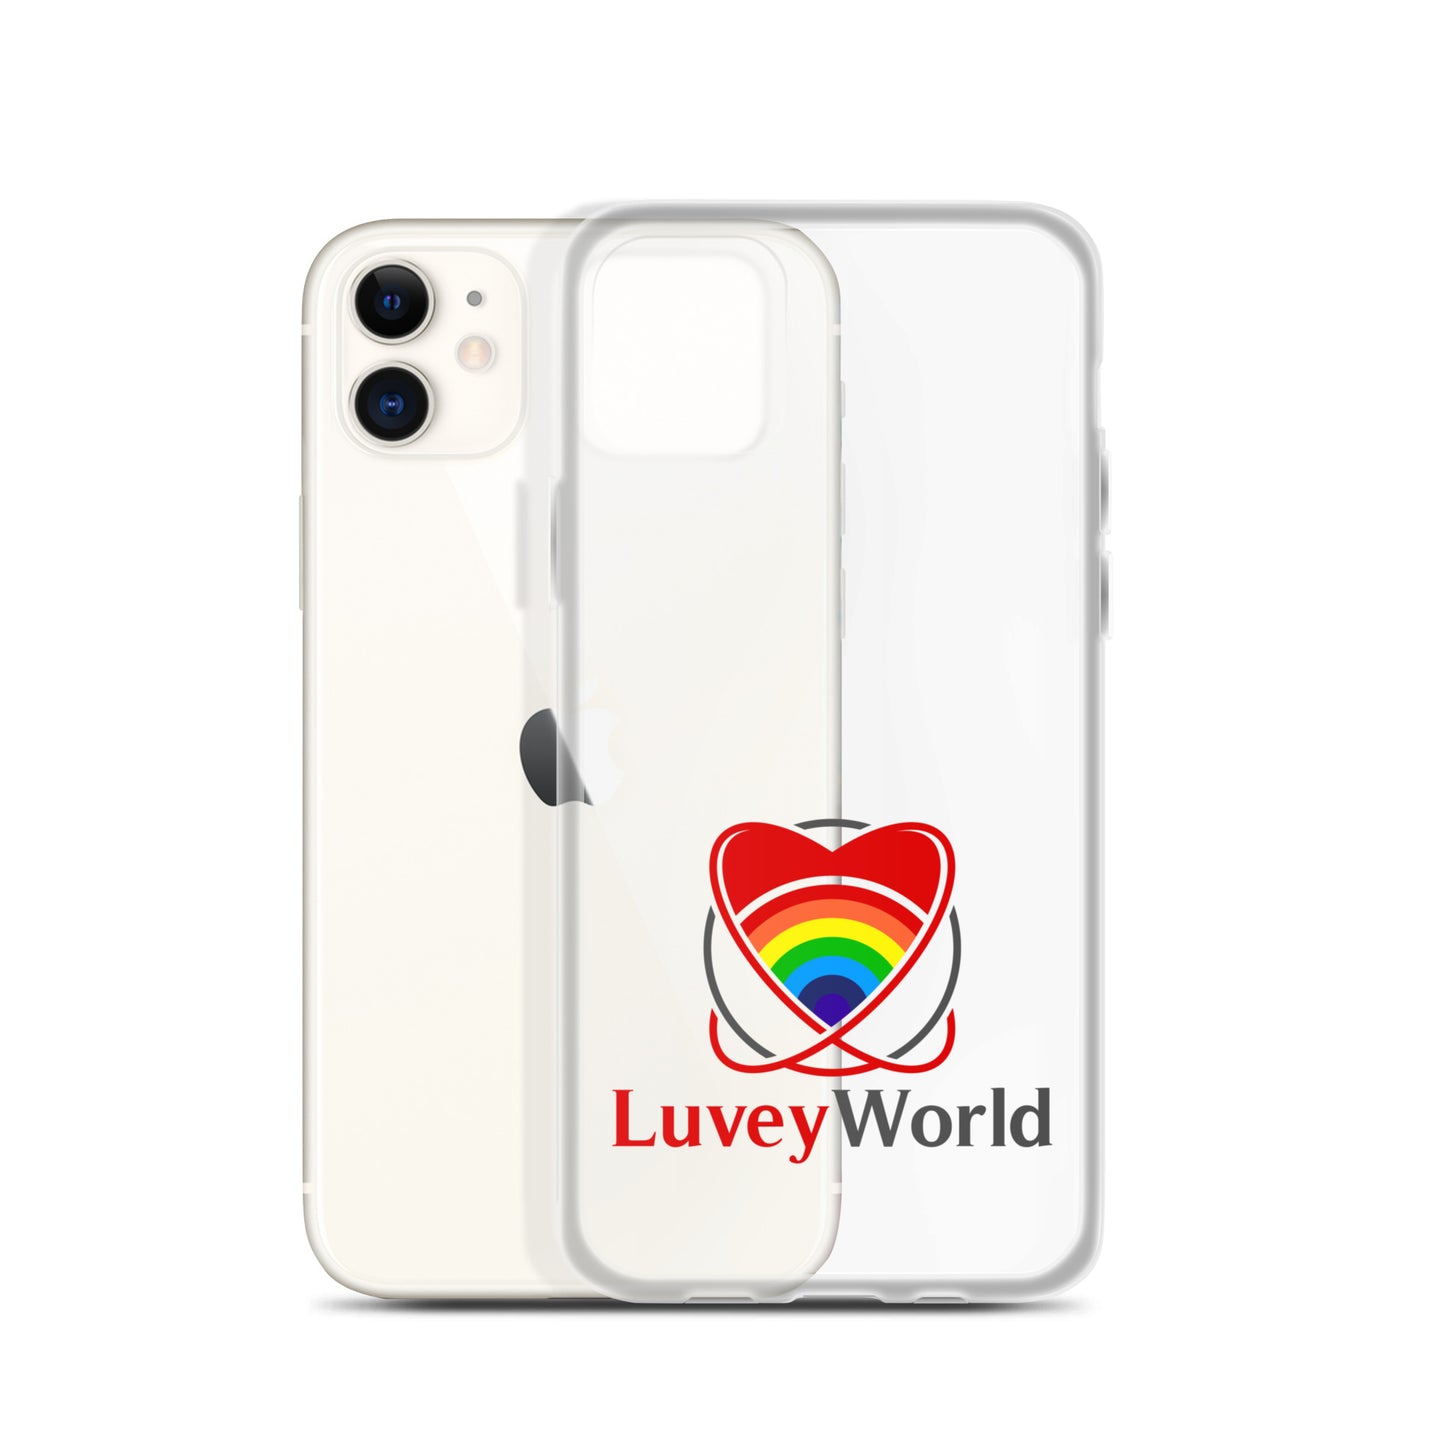 LuveyWorld iPhone Case